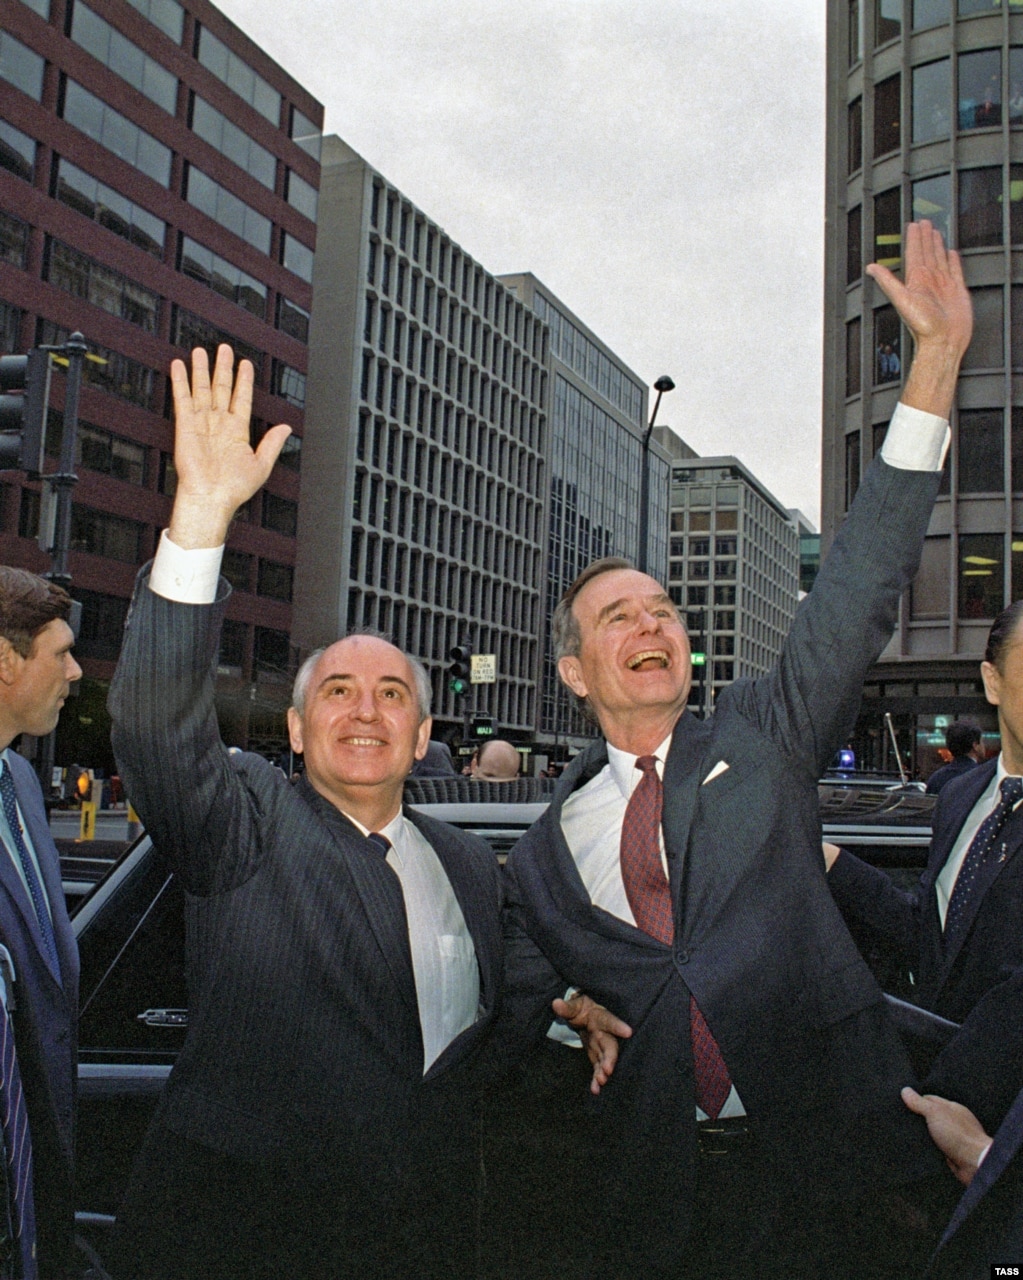 Михайло Горбачов і 43-й віцепрезидент США Джордж Буш вітають жителів Вашингтона, округ Колумбія, під час офіційного візиту Горбачова до США 10 грудня 1987 року